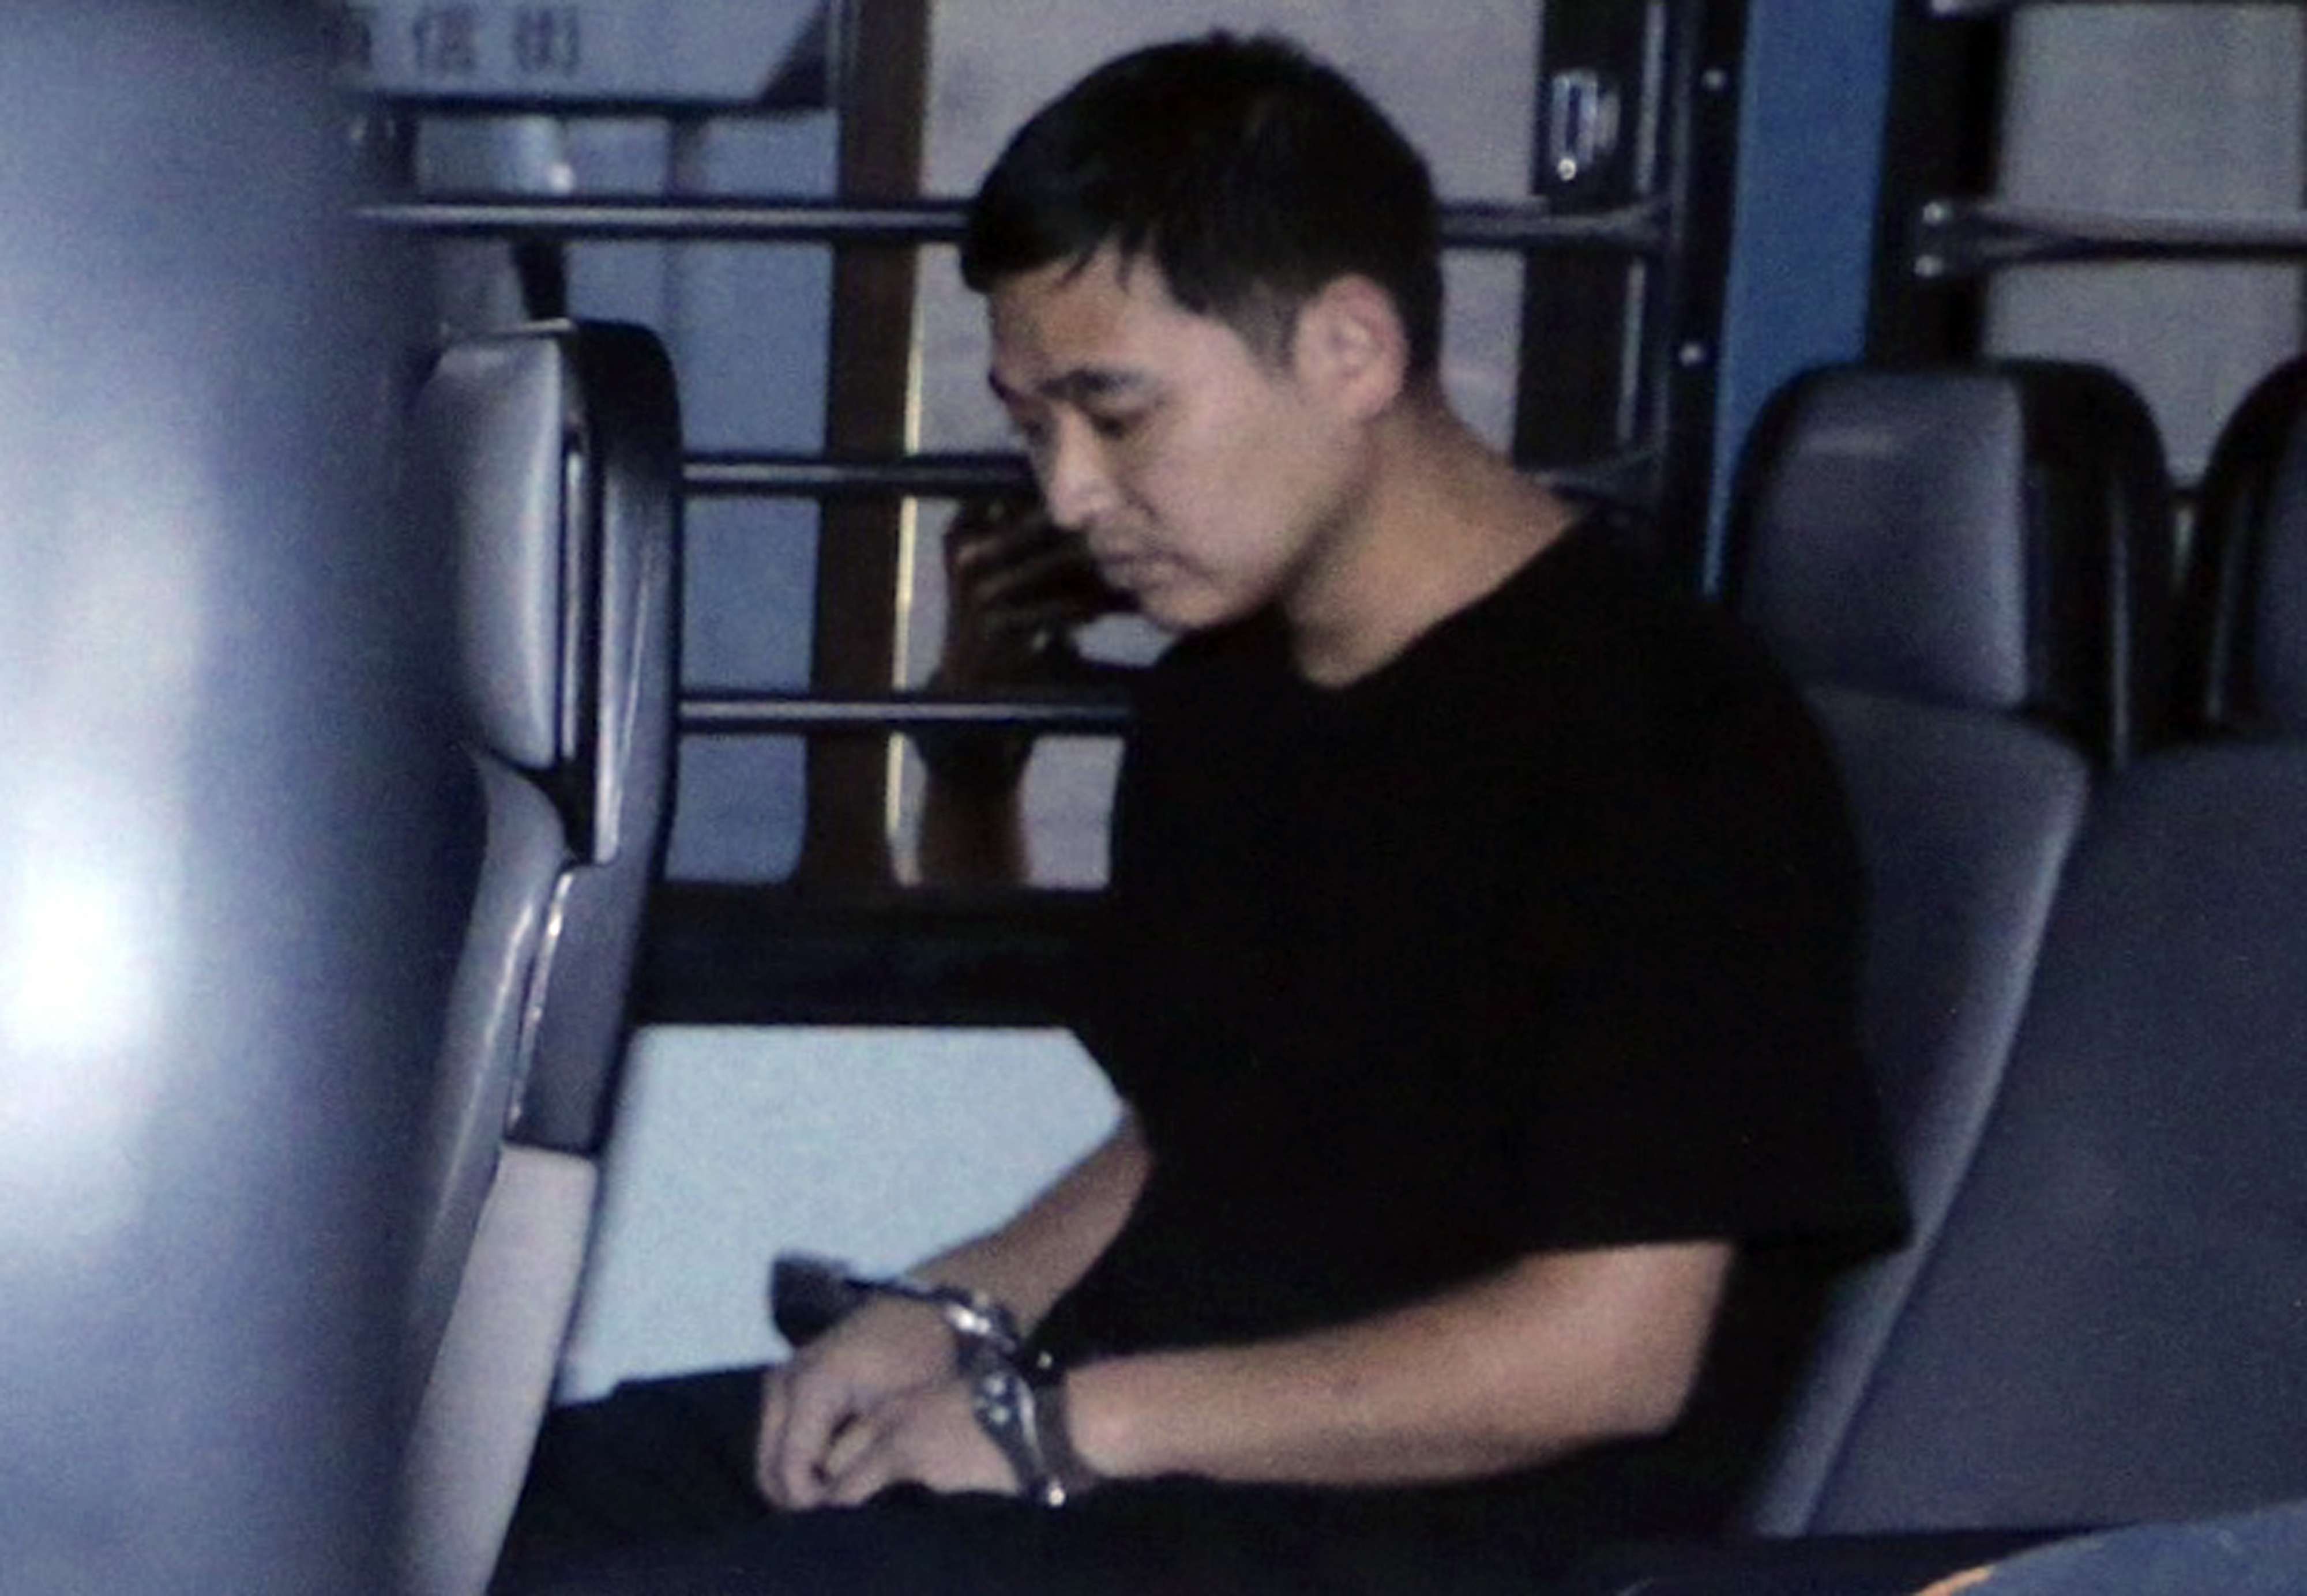 Zheng Xingwang is the only kidnapper tried in Hong Kong. Photo: David Wong